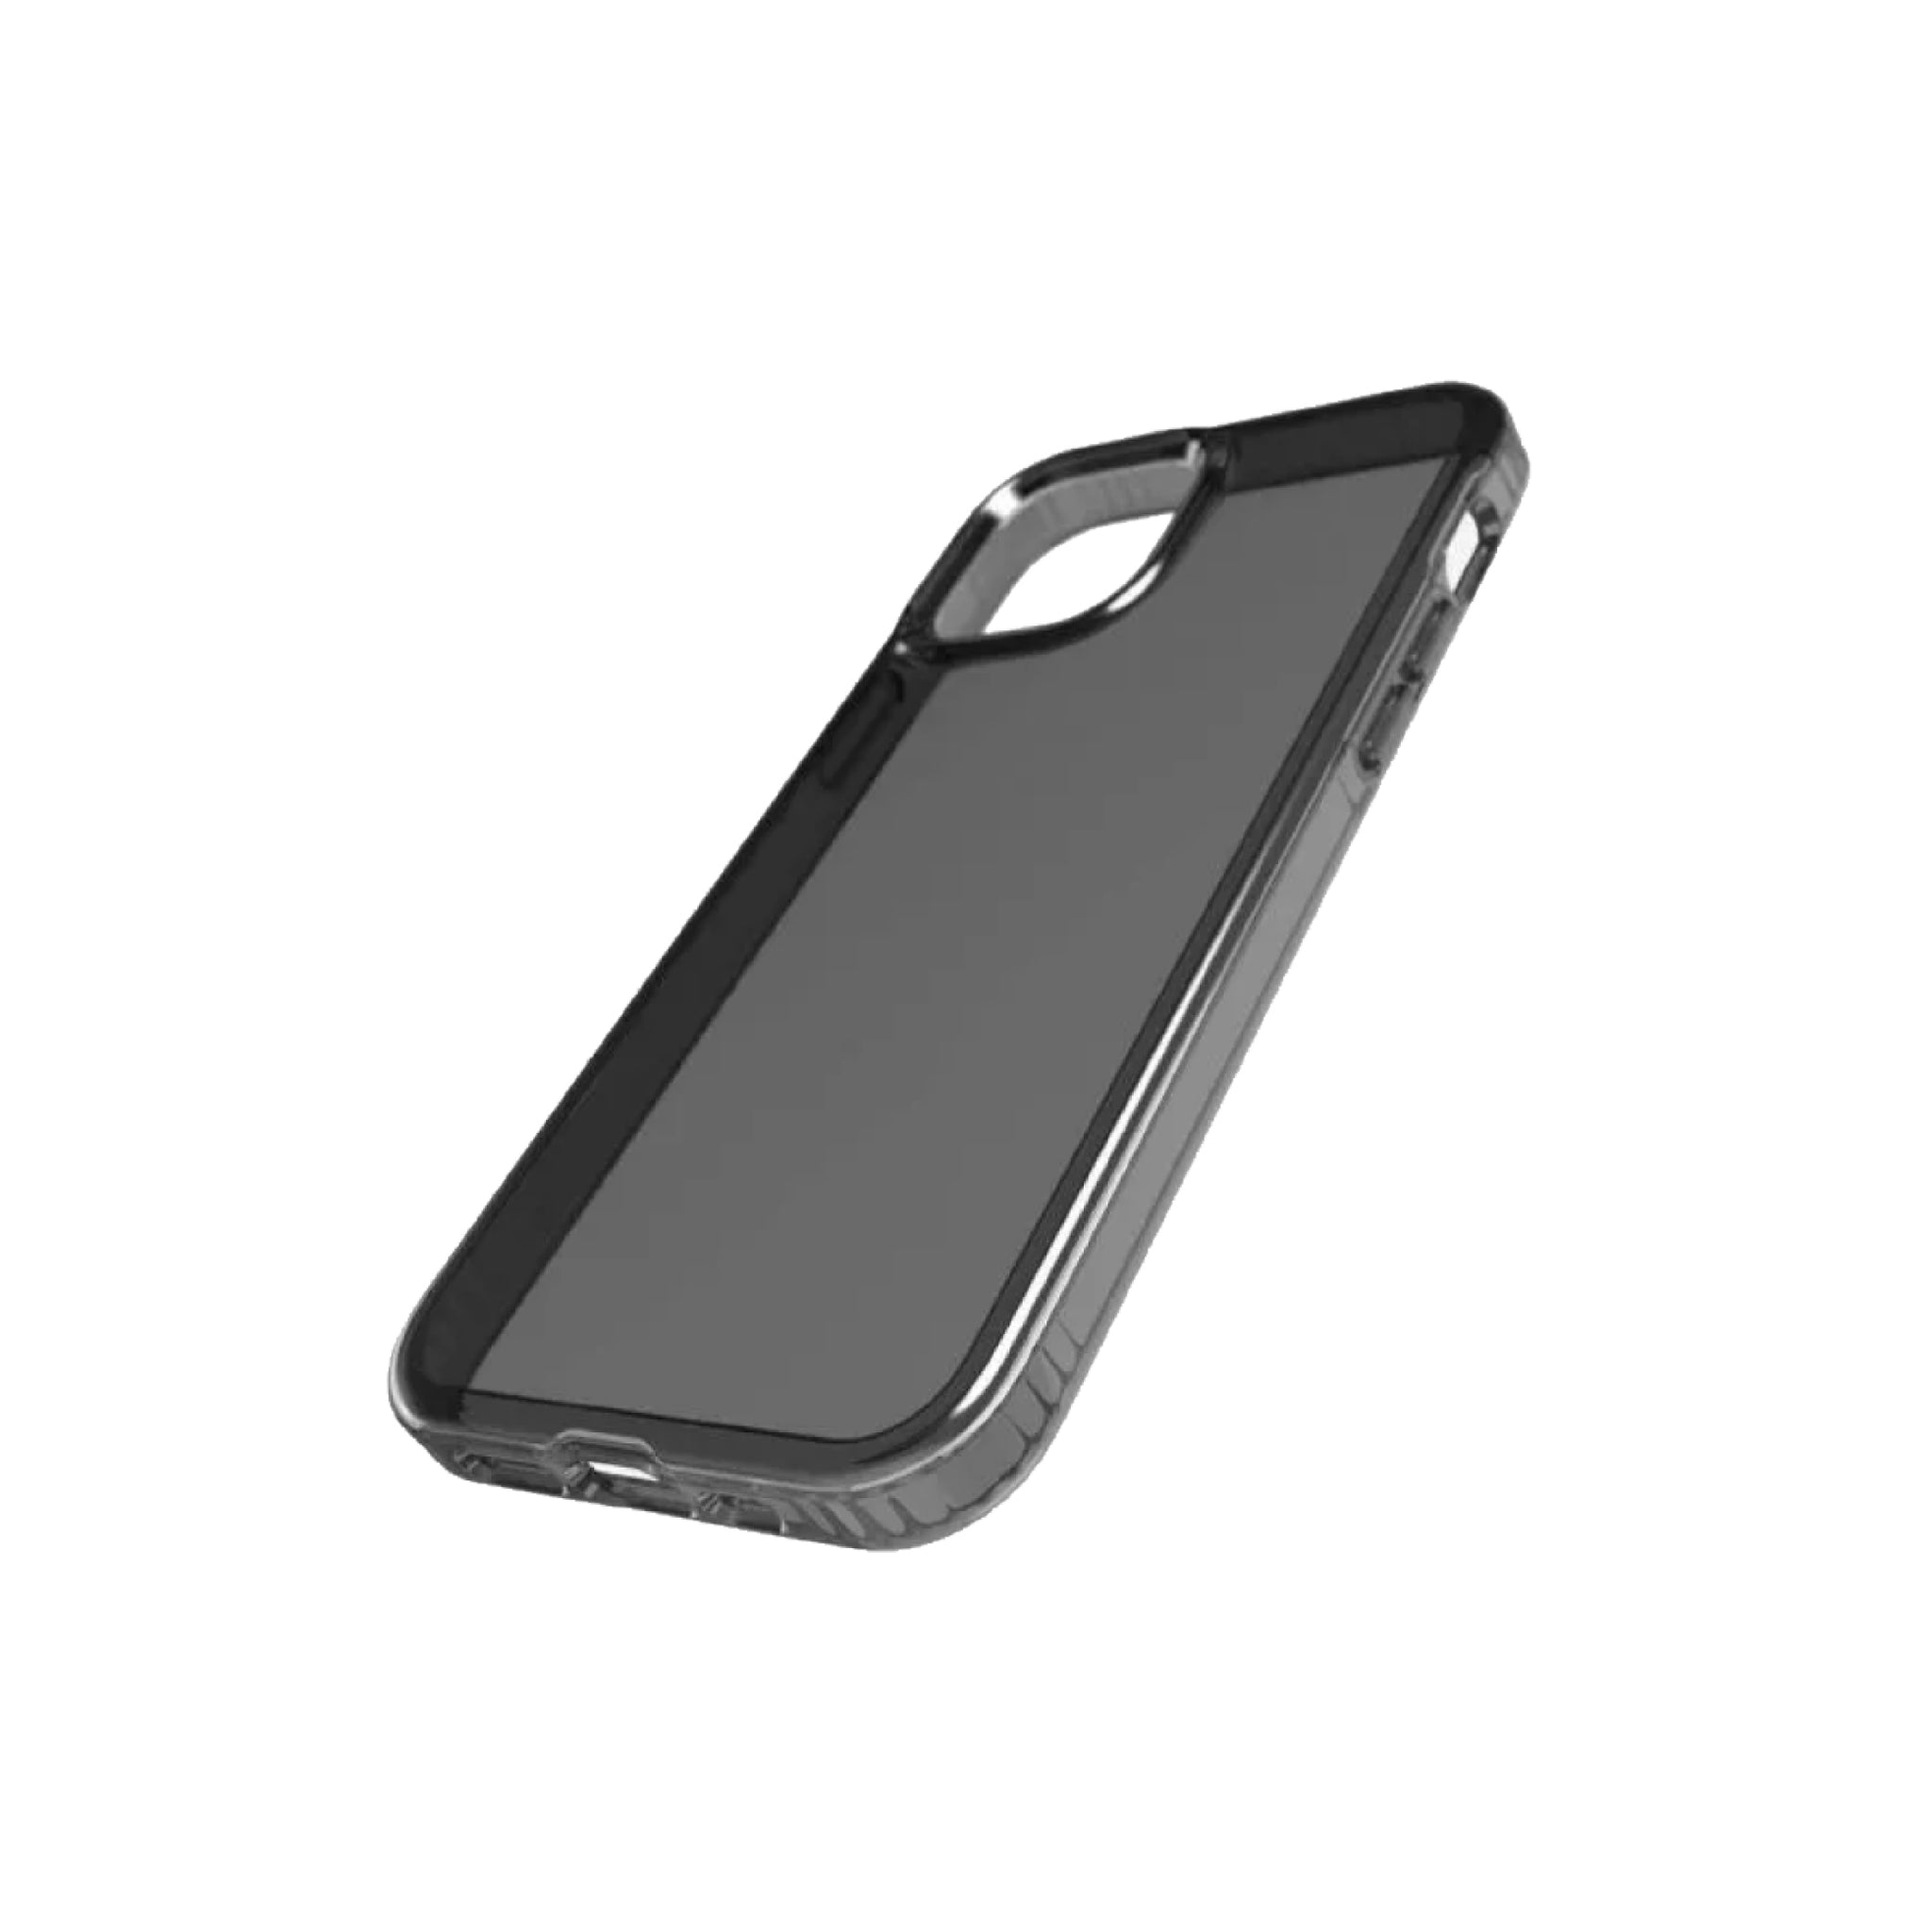 Quikcell Funda para iPhone 13 Pro Max Transparente – Celular Express